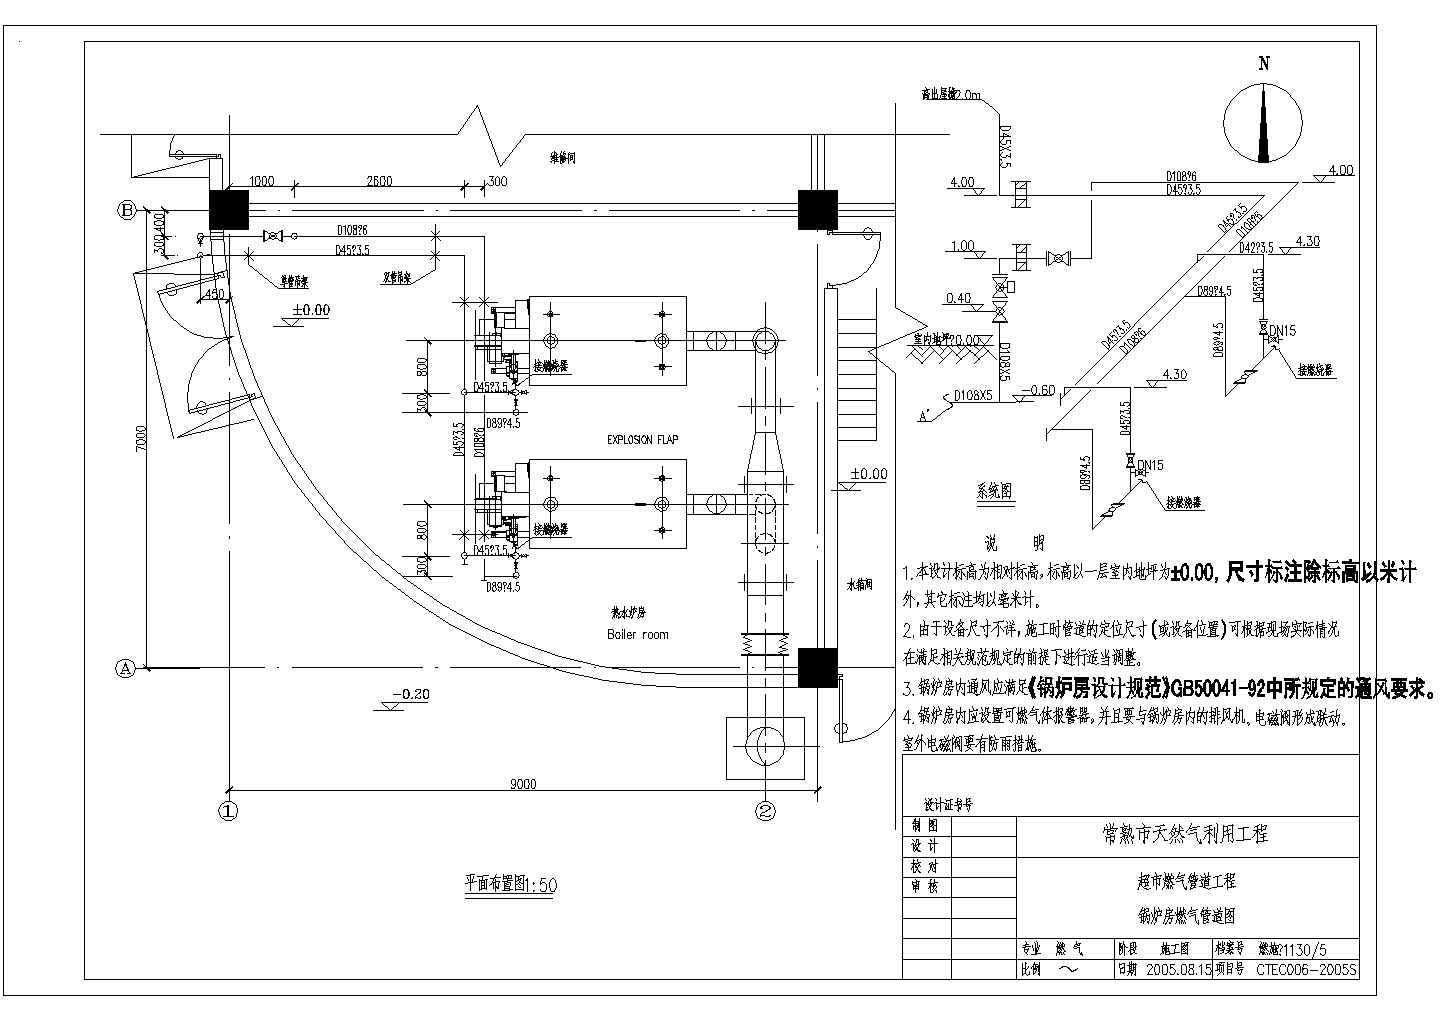 【常熟】某超市燃气管道工程设计图